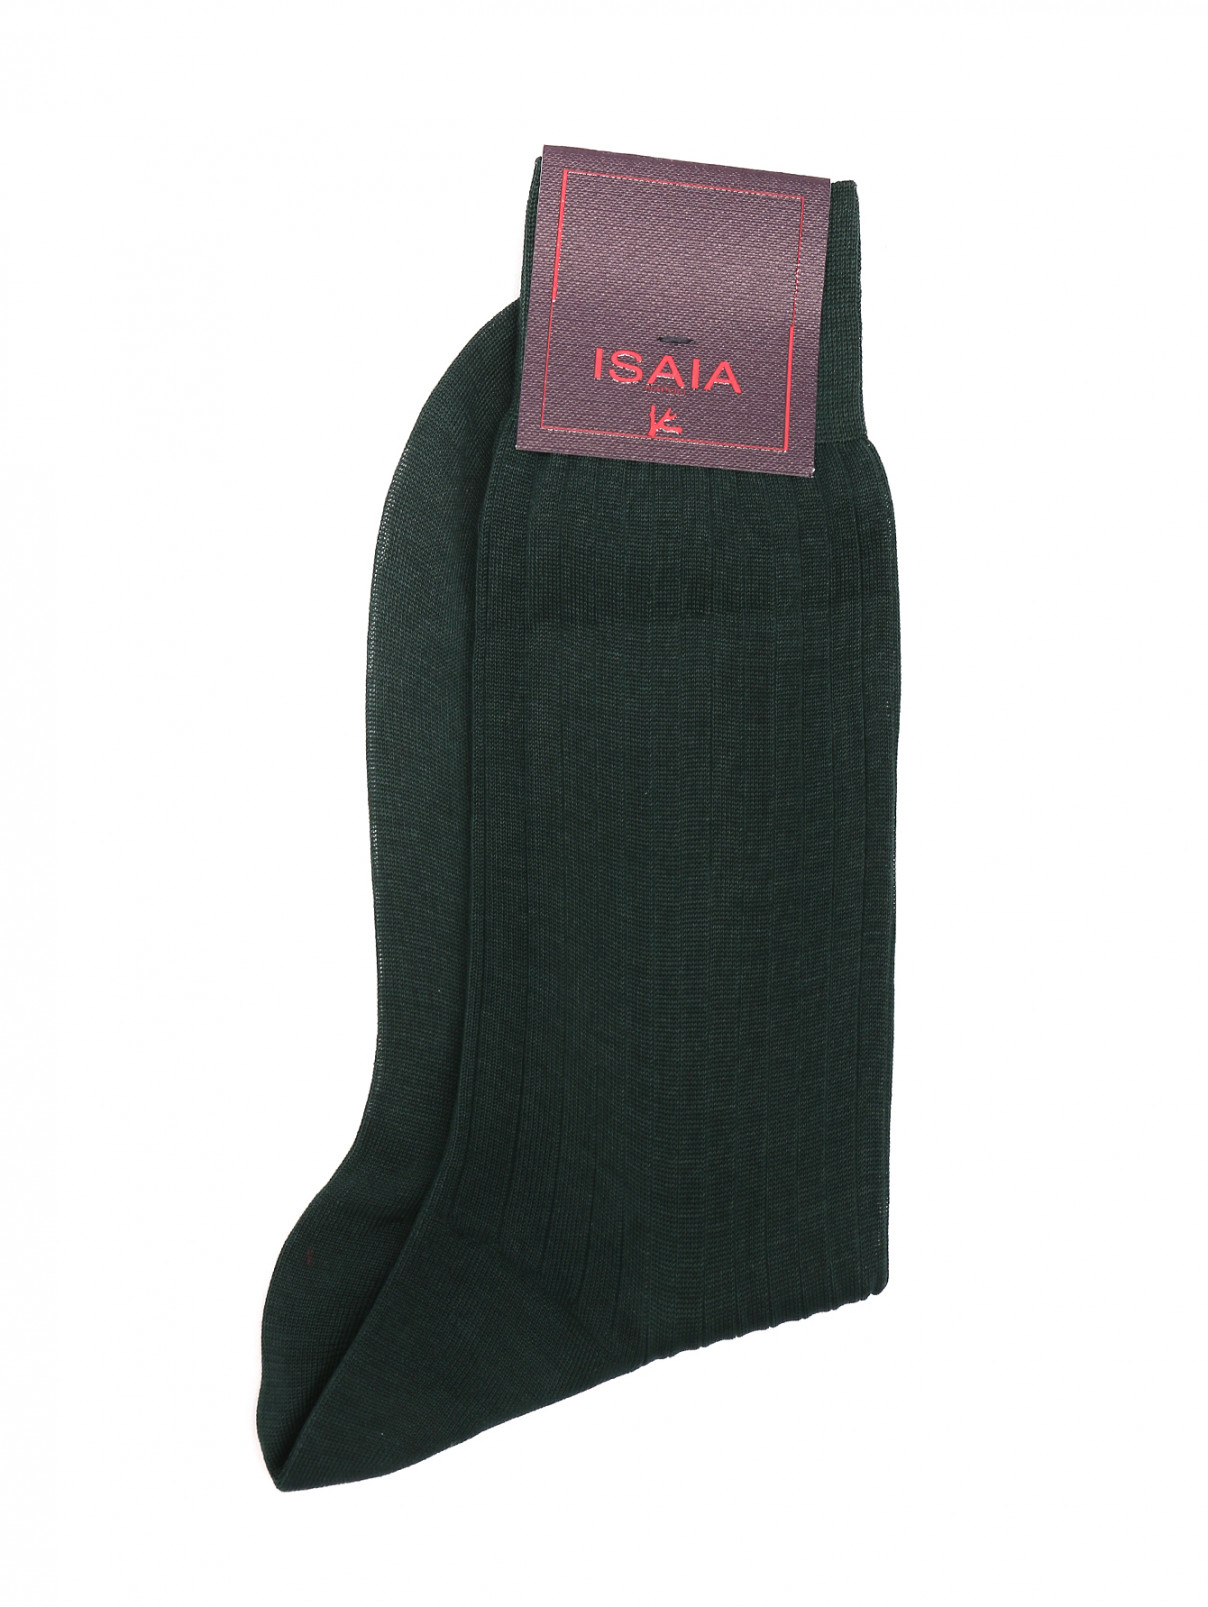 Носки из хлопка с принтом Isaia  –  Общий вид  – Цвет:  Зеленый